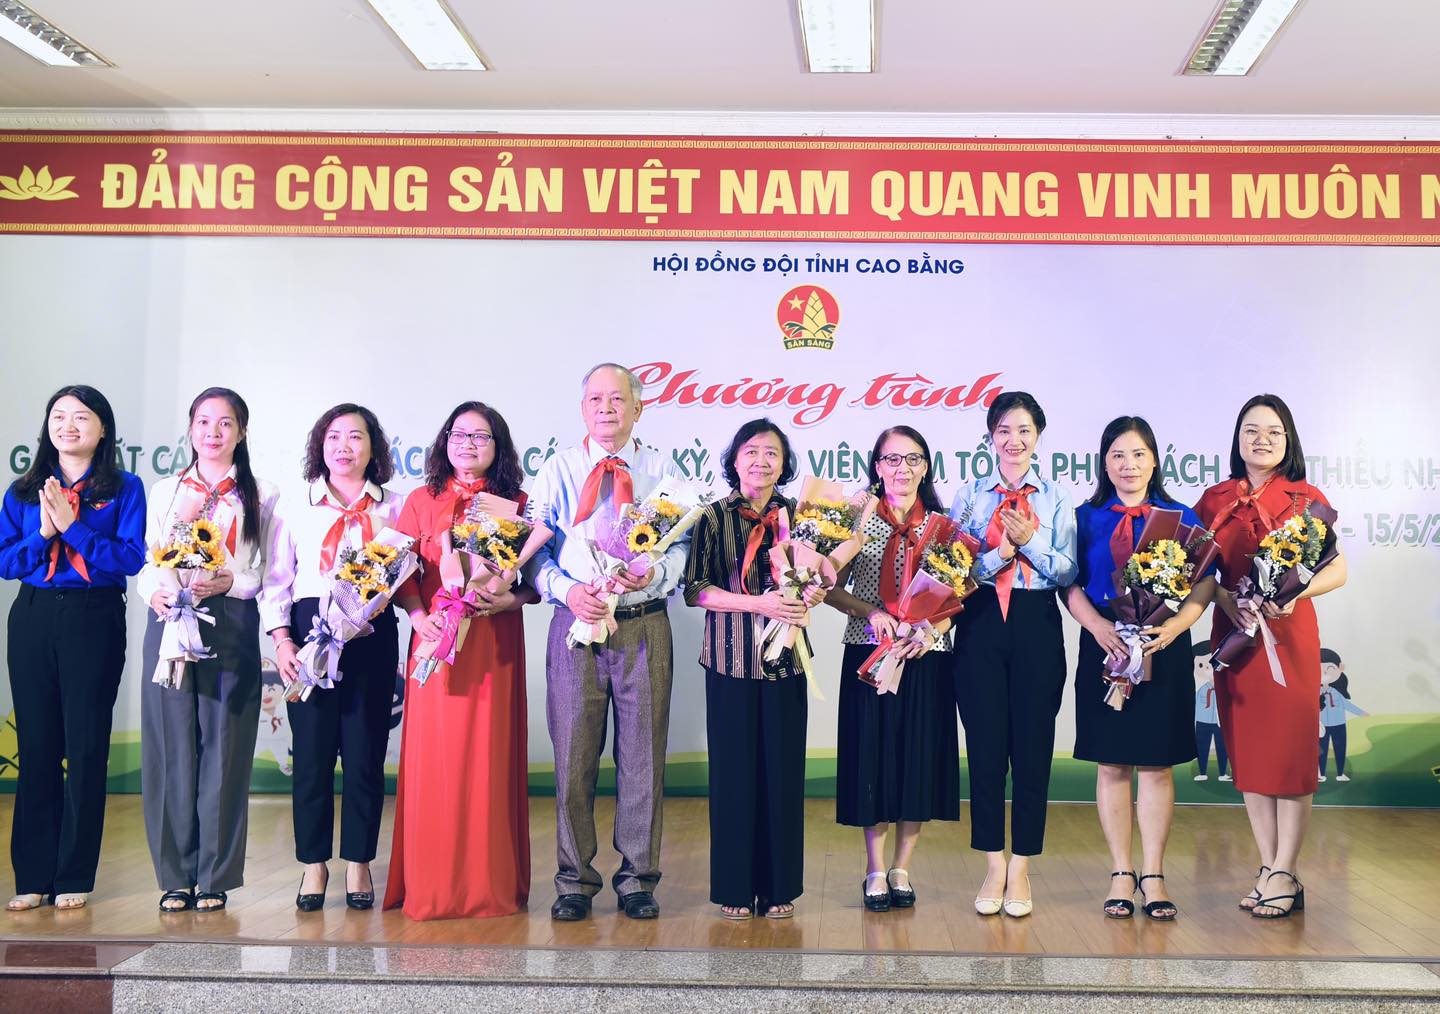 Ban tổ chức trao tặng hoa cho các đồng chí nguyên lãnh đạo Hội đồng Đội các thời kỳ và các đồng chí Uỷ viên Hội đồng Đội khoá XIV.